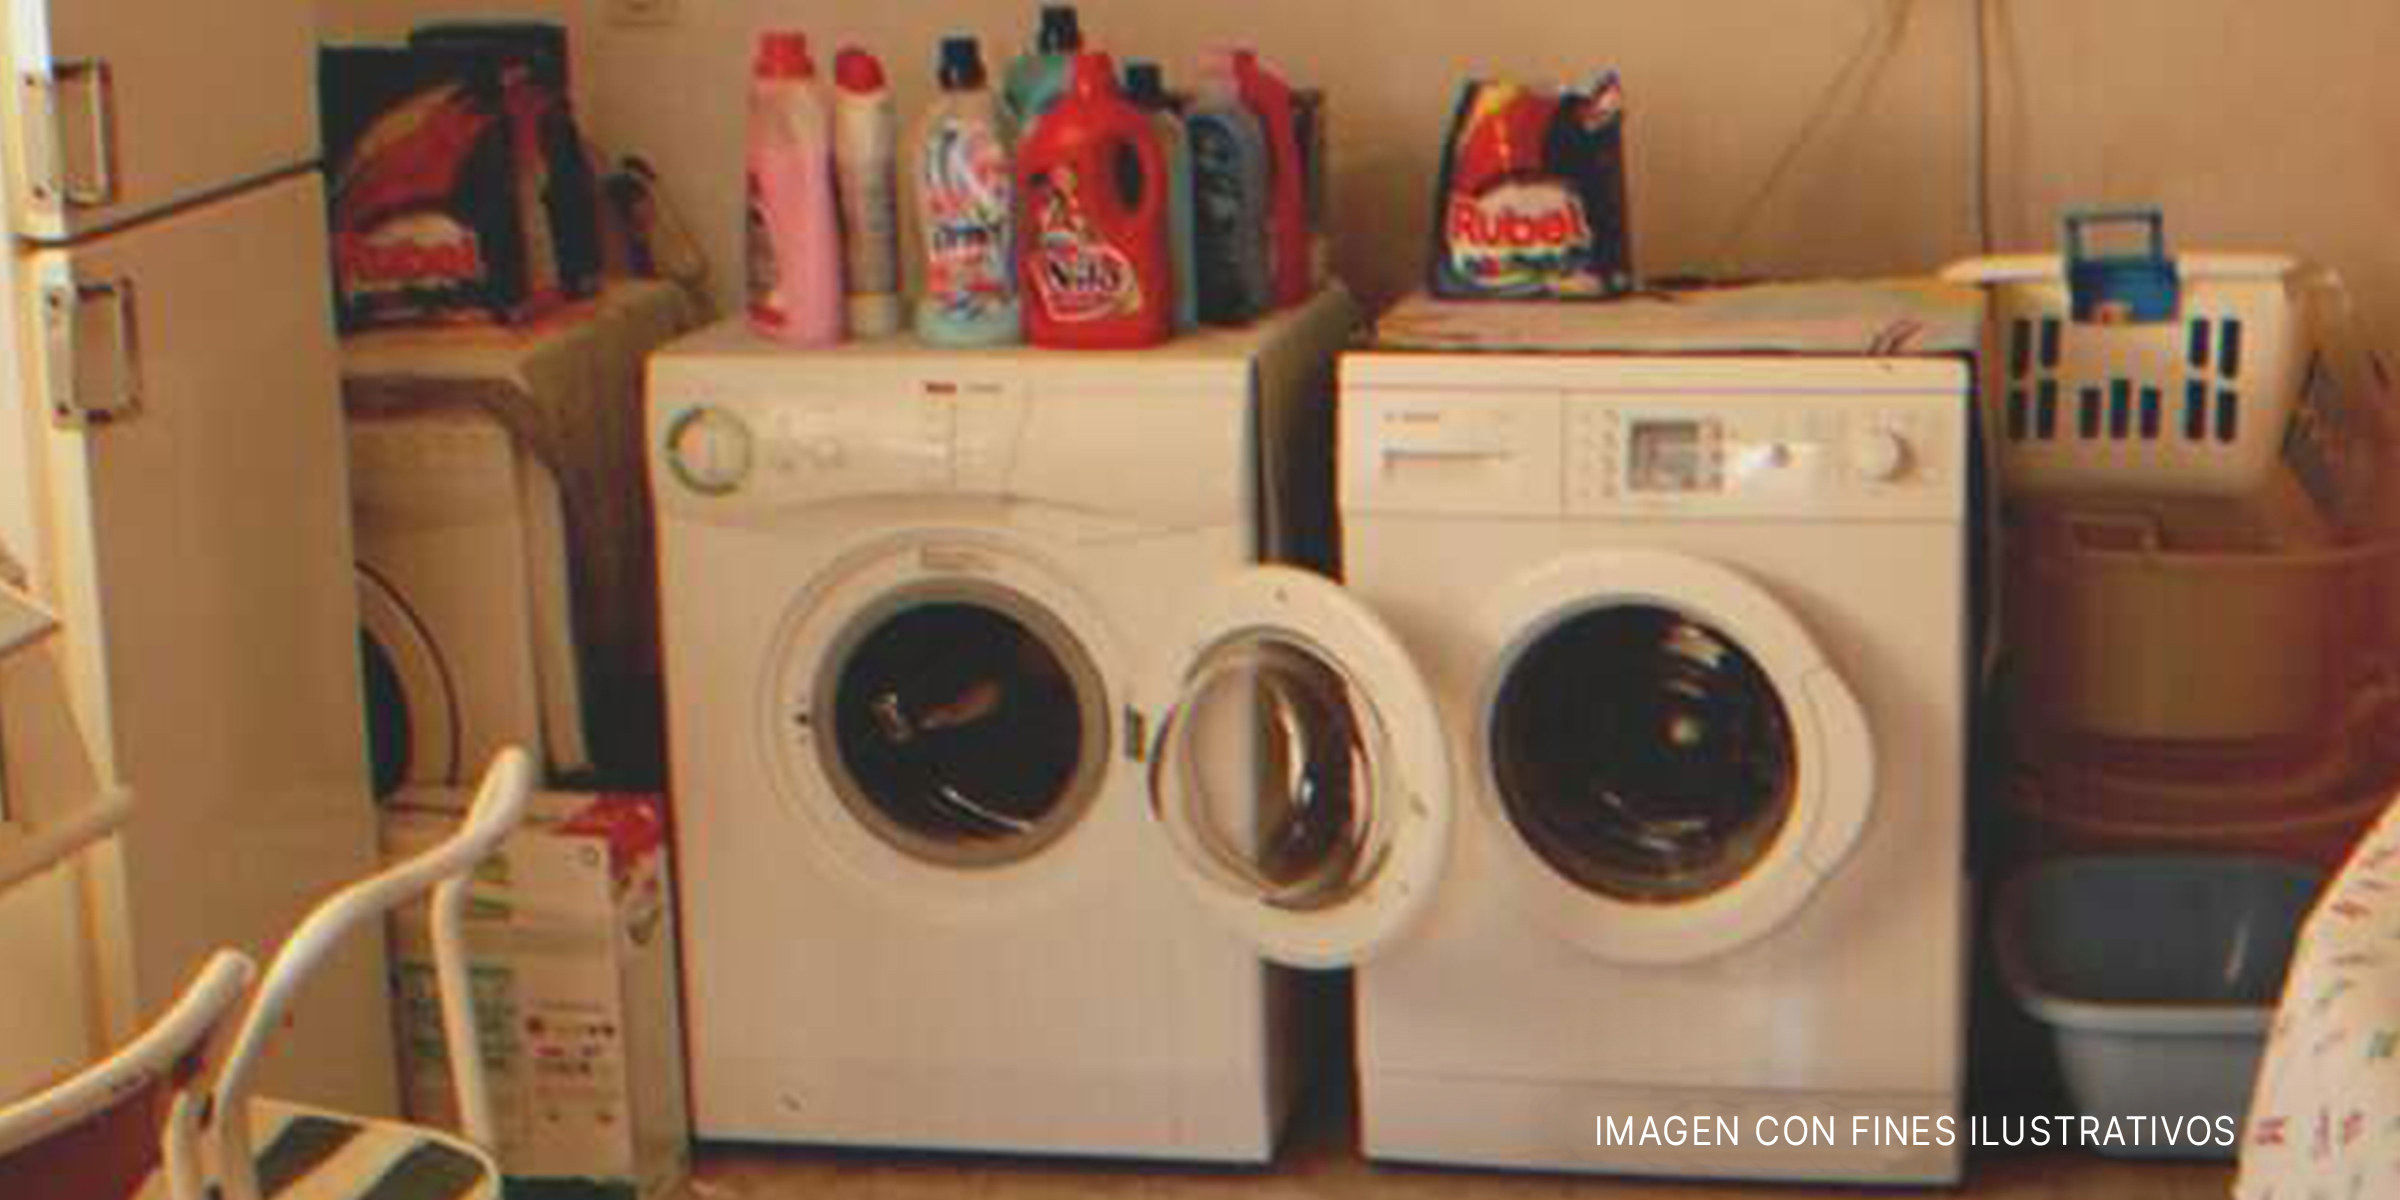 Lavadoras con botellas de detergente colocadas encima. | Foto: flickr.com/auxesis (CC BY 2.0)